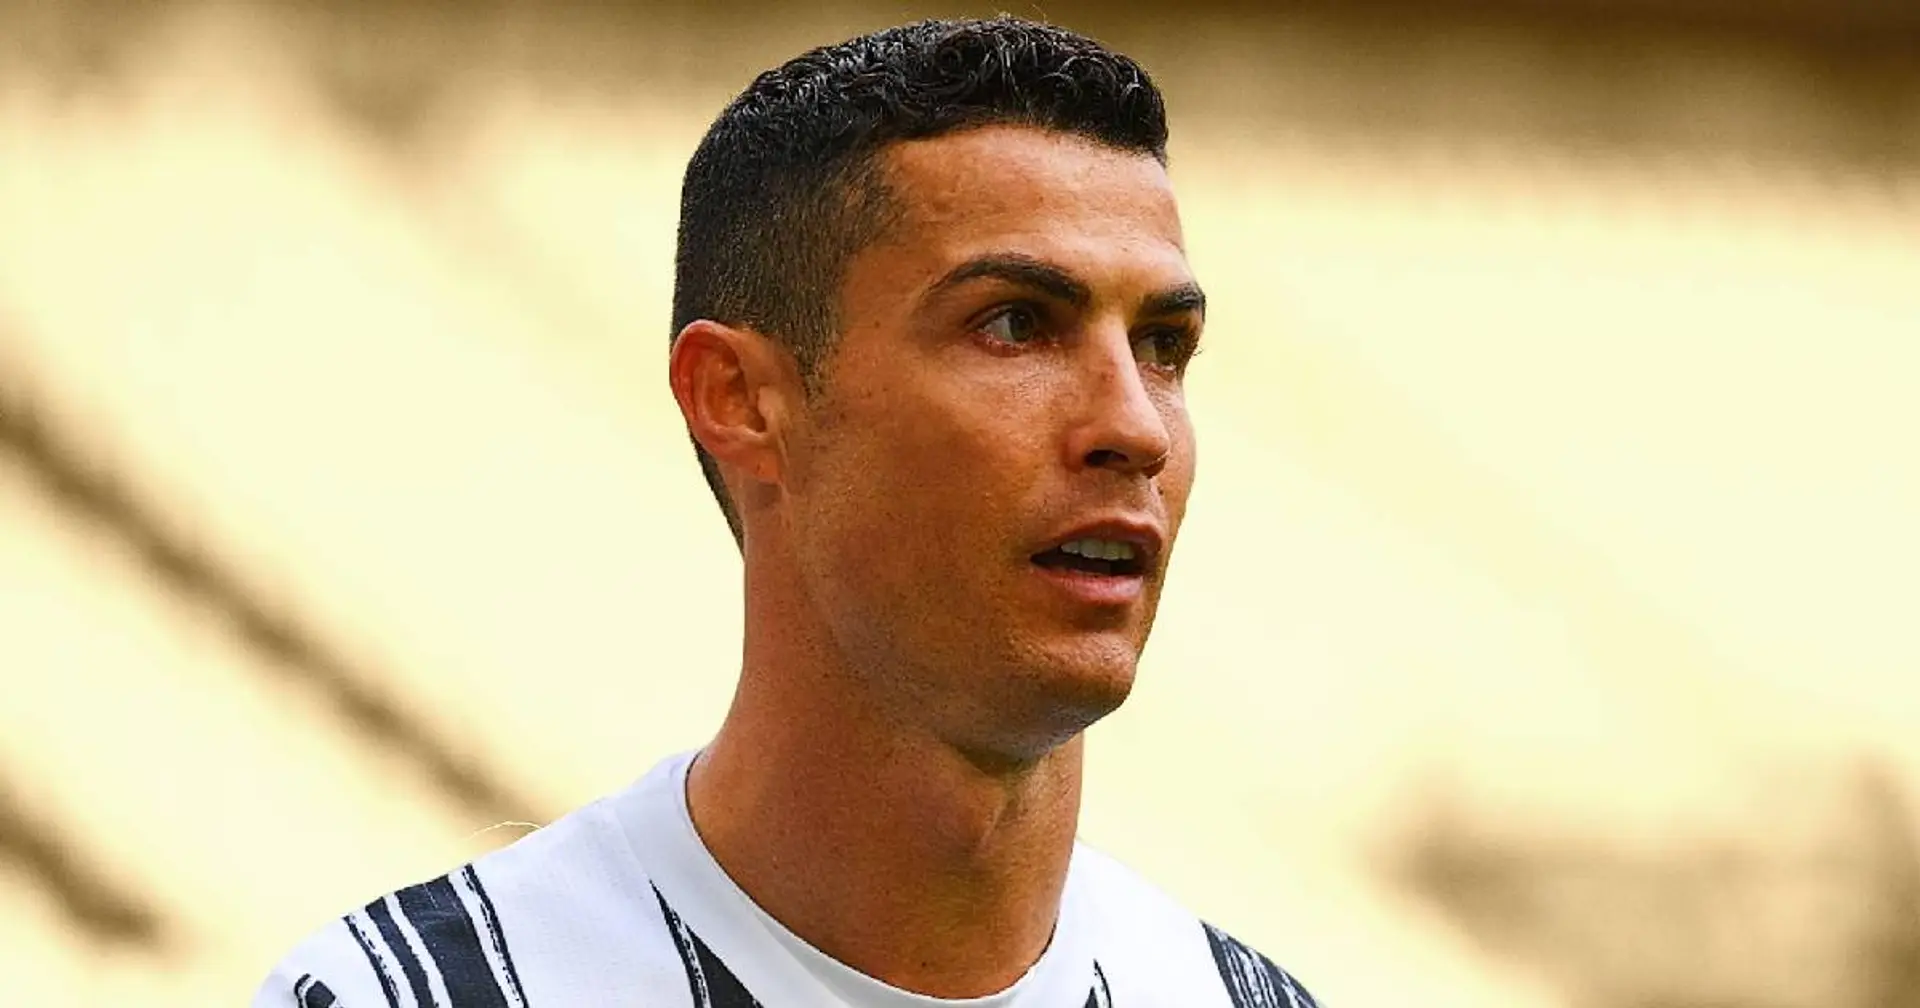 "Tuteliamo i nostri diritti": comunicato ufficiale della Juventus sul caso Ronaldo 